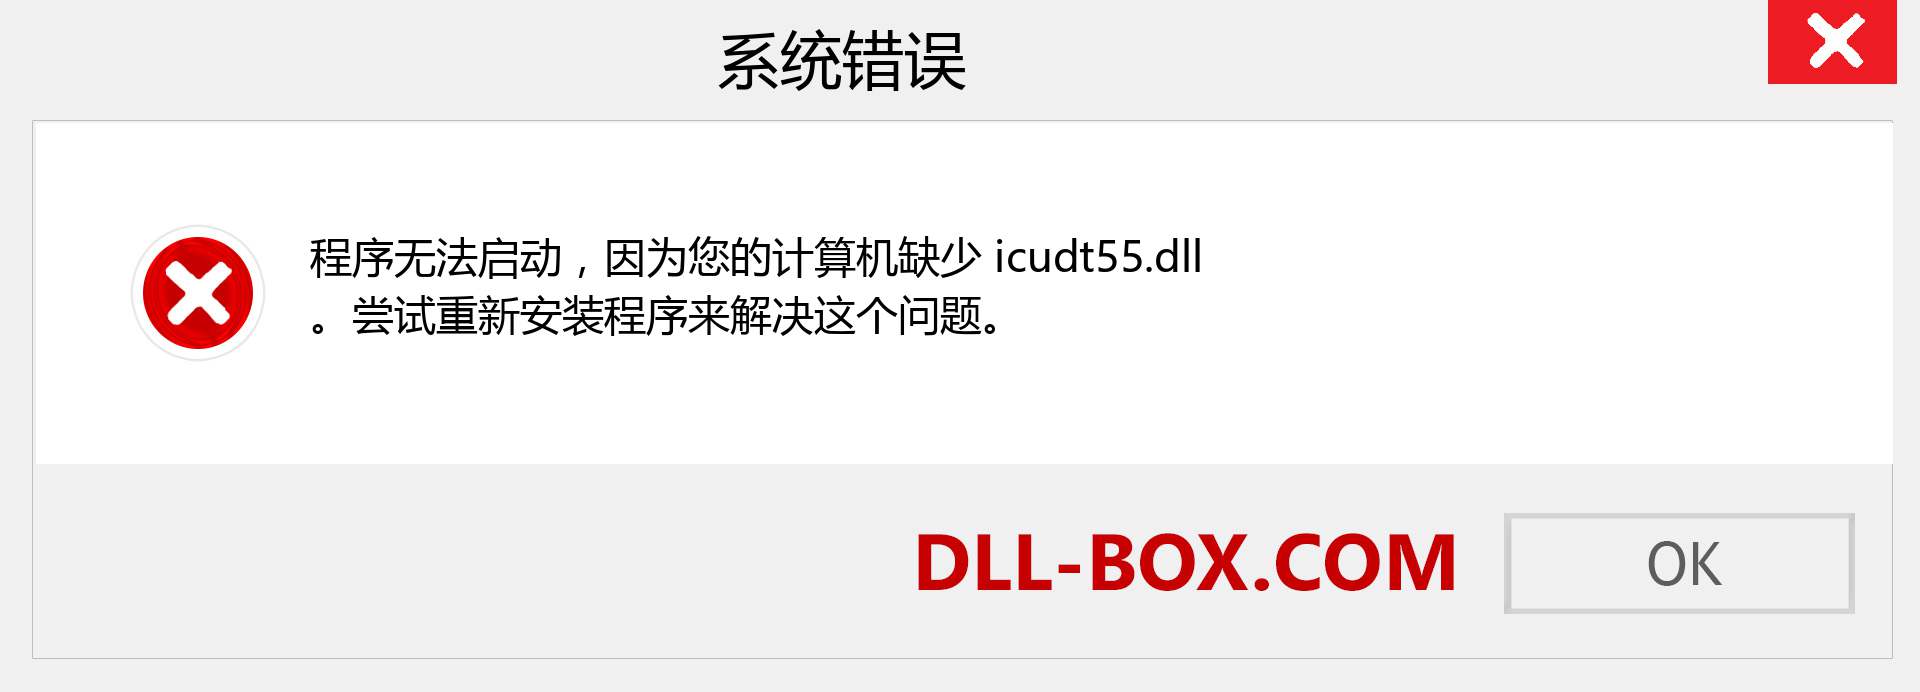 icudt55.dll 文件丢失？。 适用于 Windows 7、8、10 的下载 - 修复 Windows、照片、图像上的 icudt55 dll 丢失错误